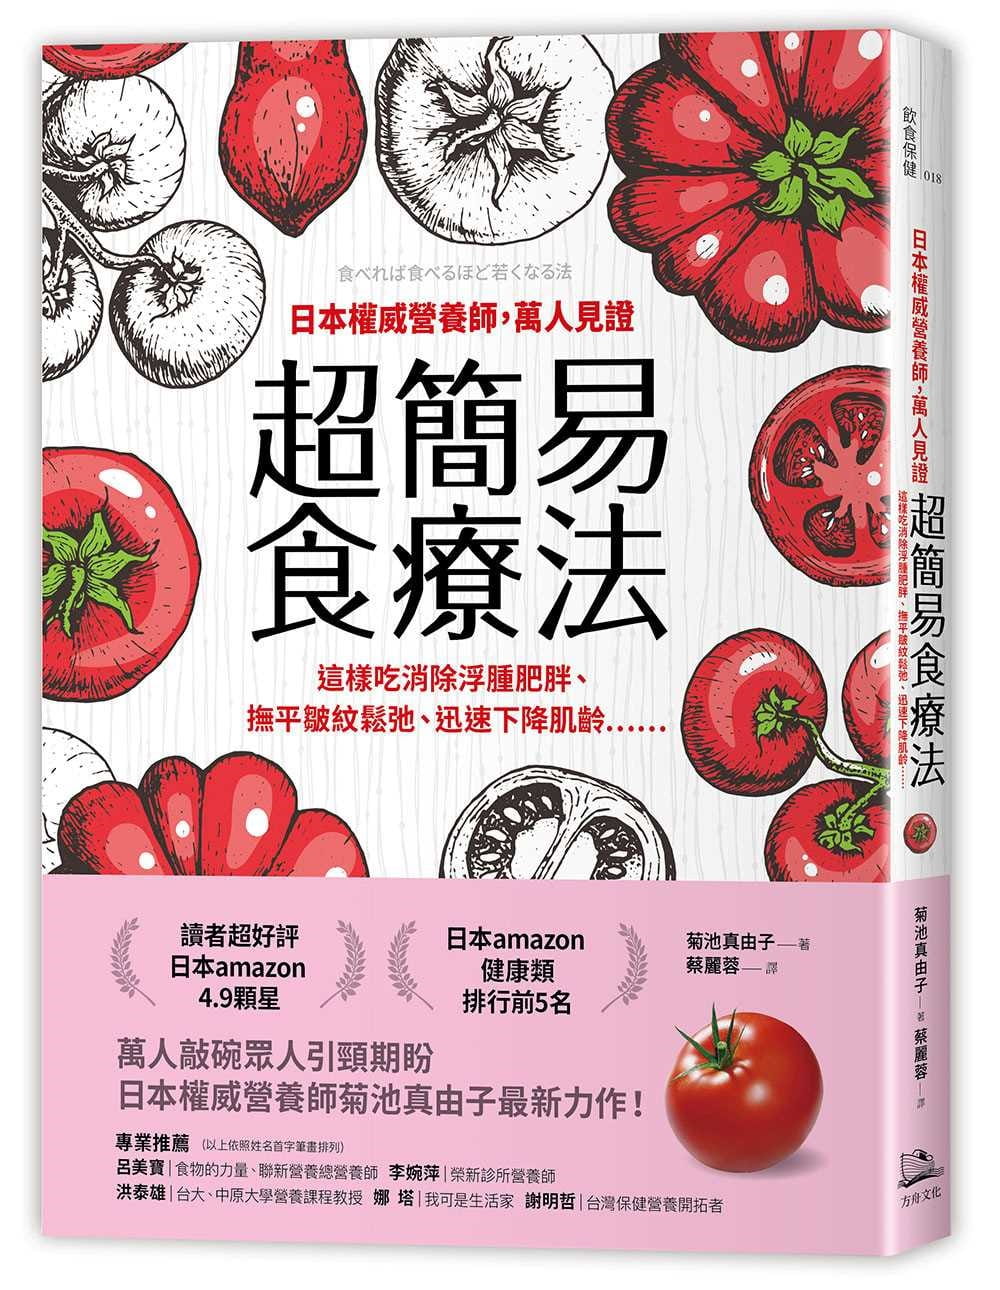 日本權威營養師，萬人見證超簡易食療法：這樣吃消除浮腫肥胖、撫平皺紋鬆弛、迅速下降肌齡……